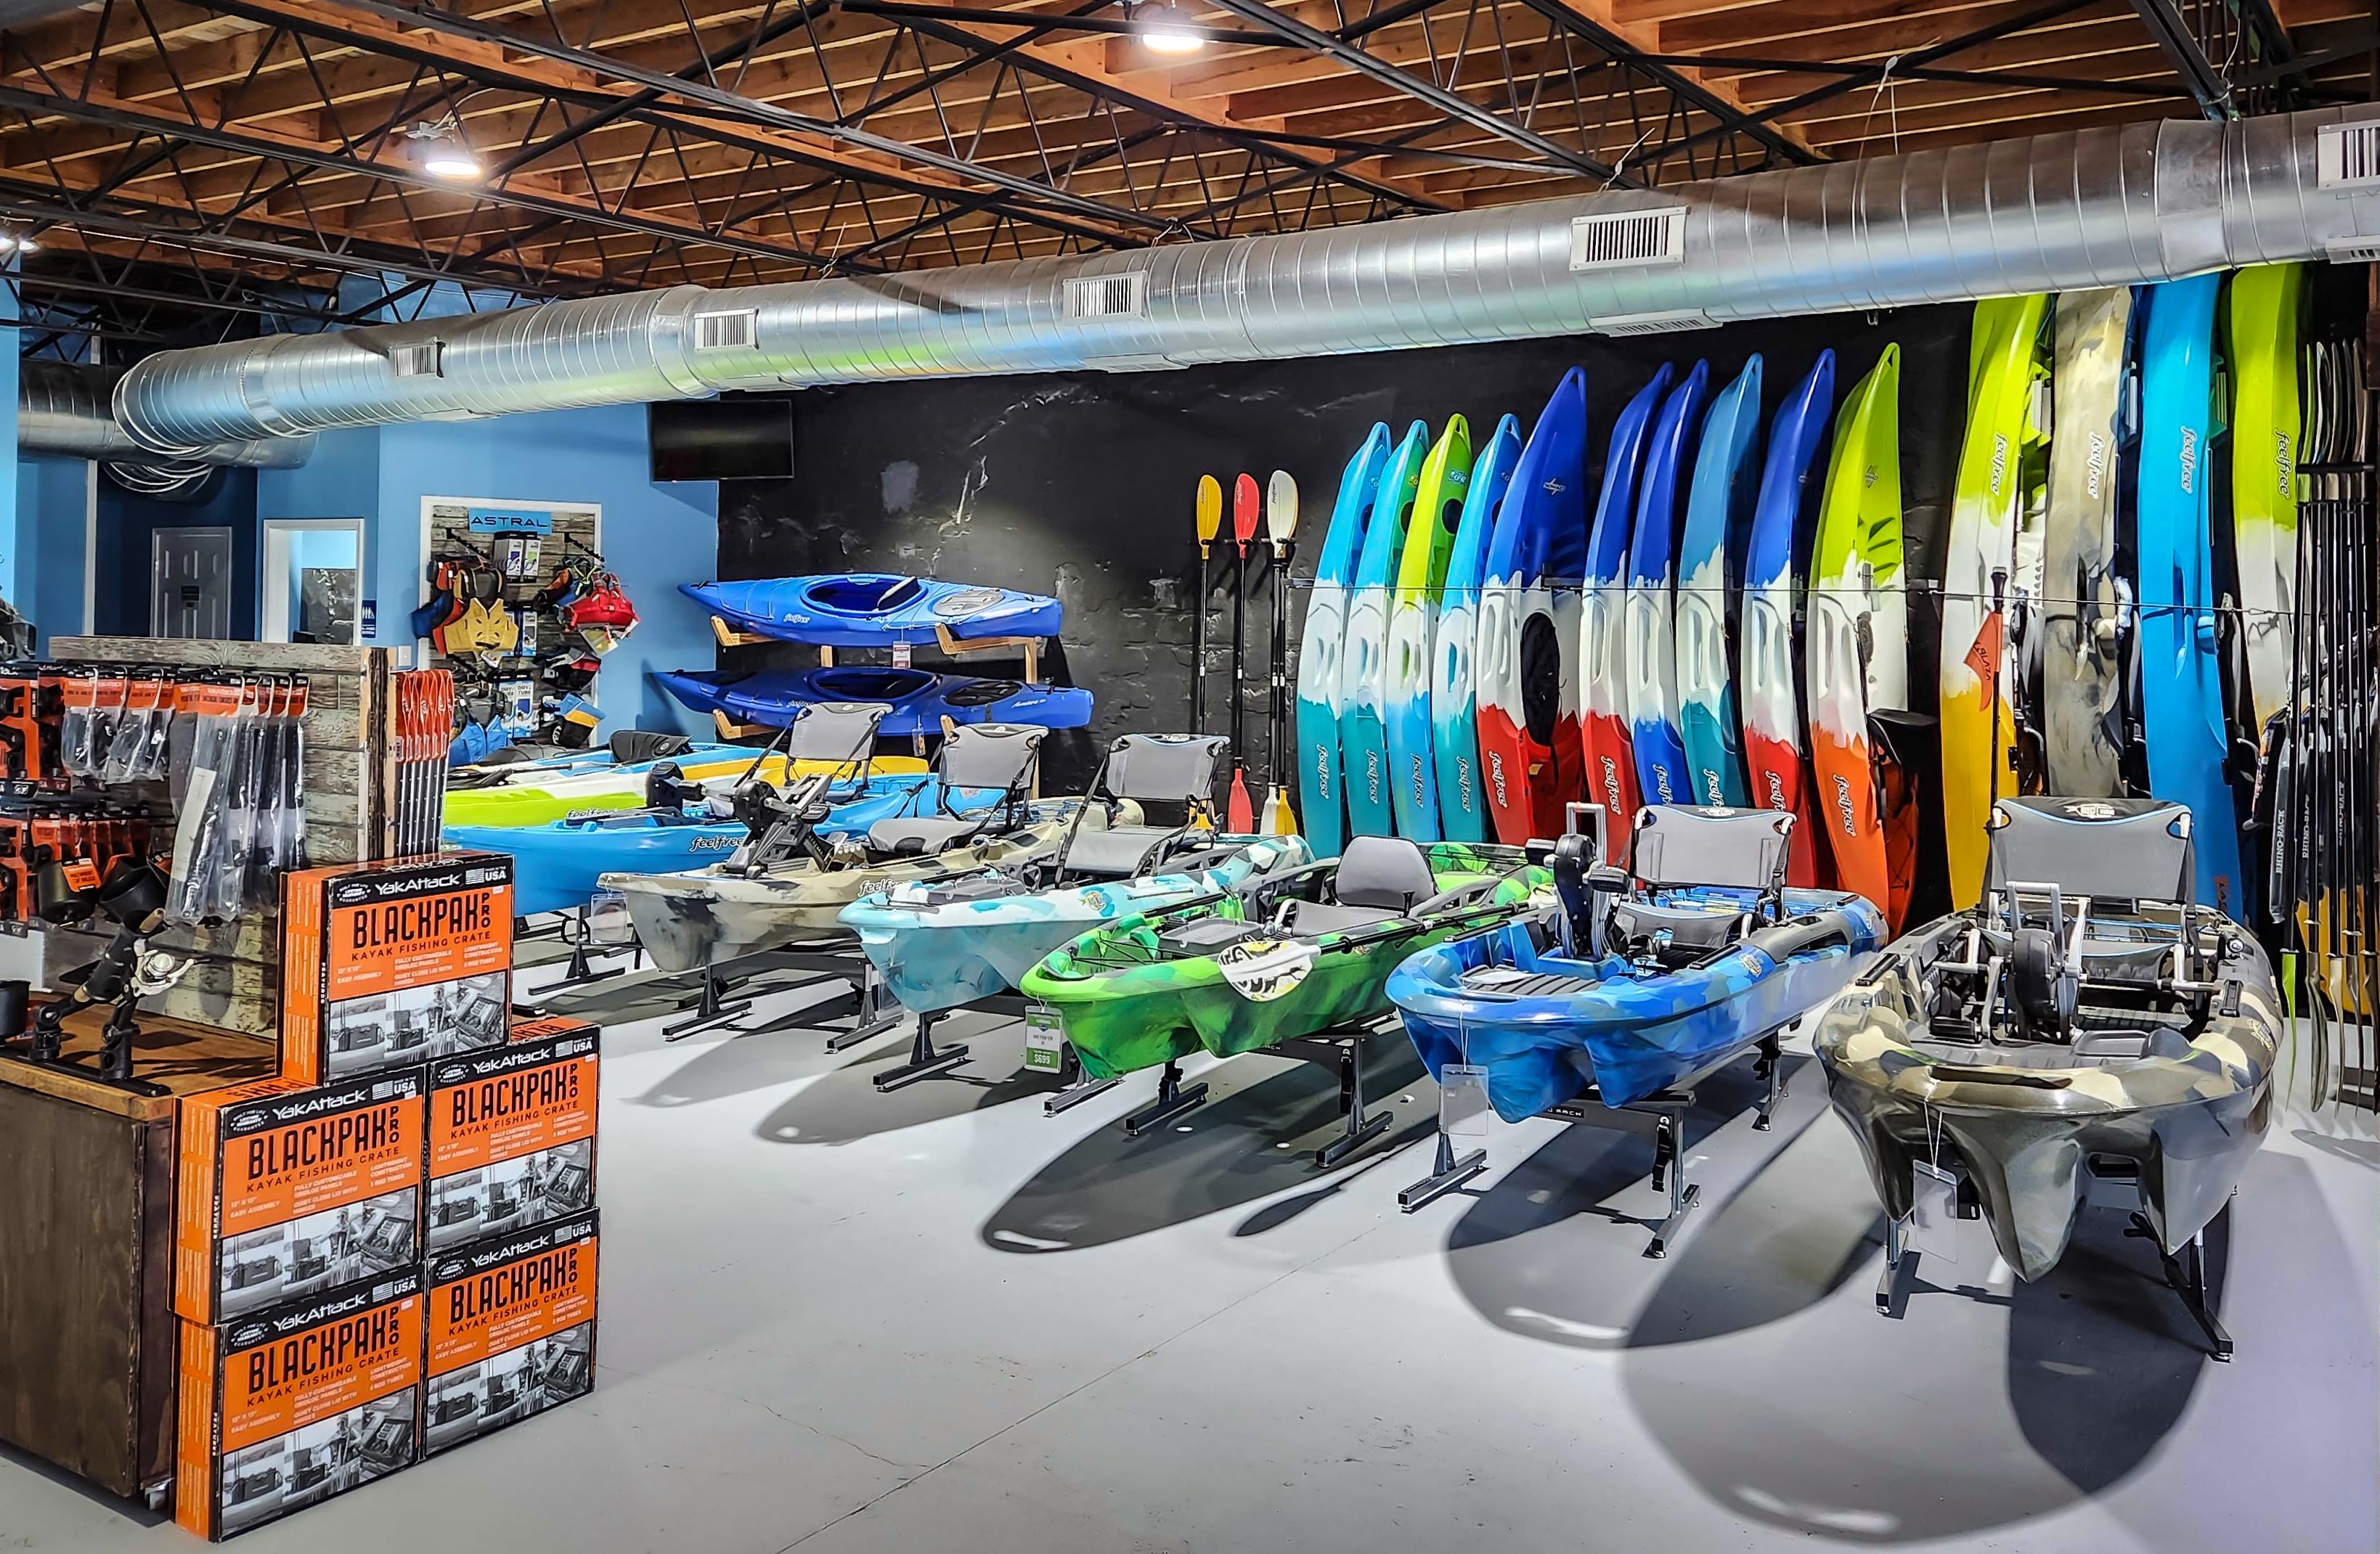 Established North Carolina Kayak Shop Relocates to Old Fort, NC